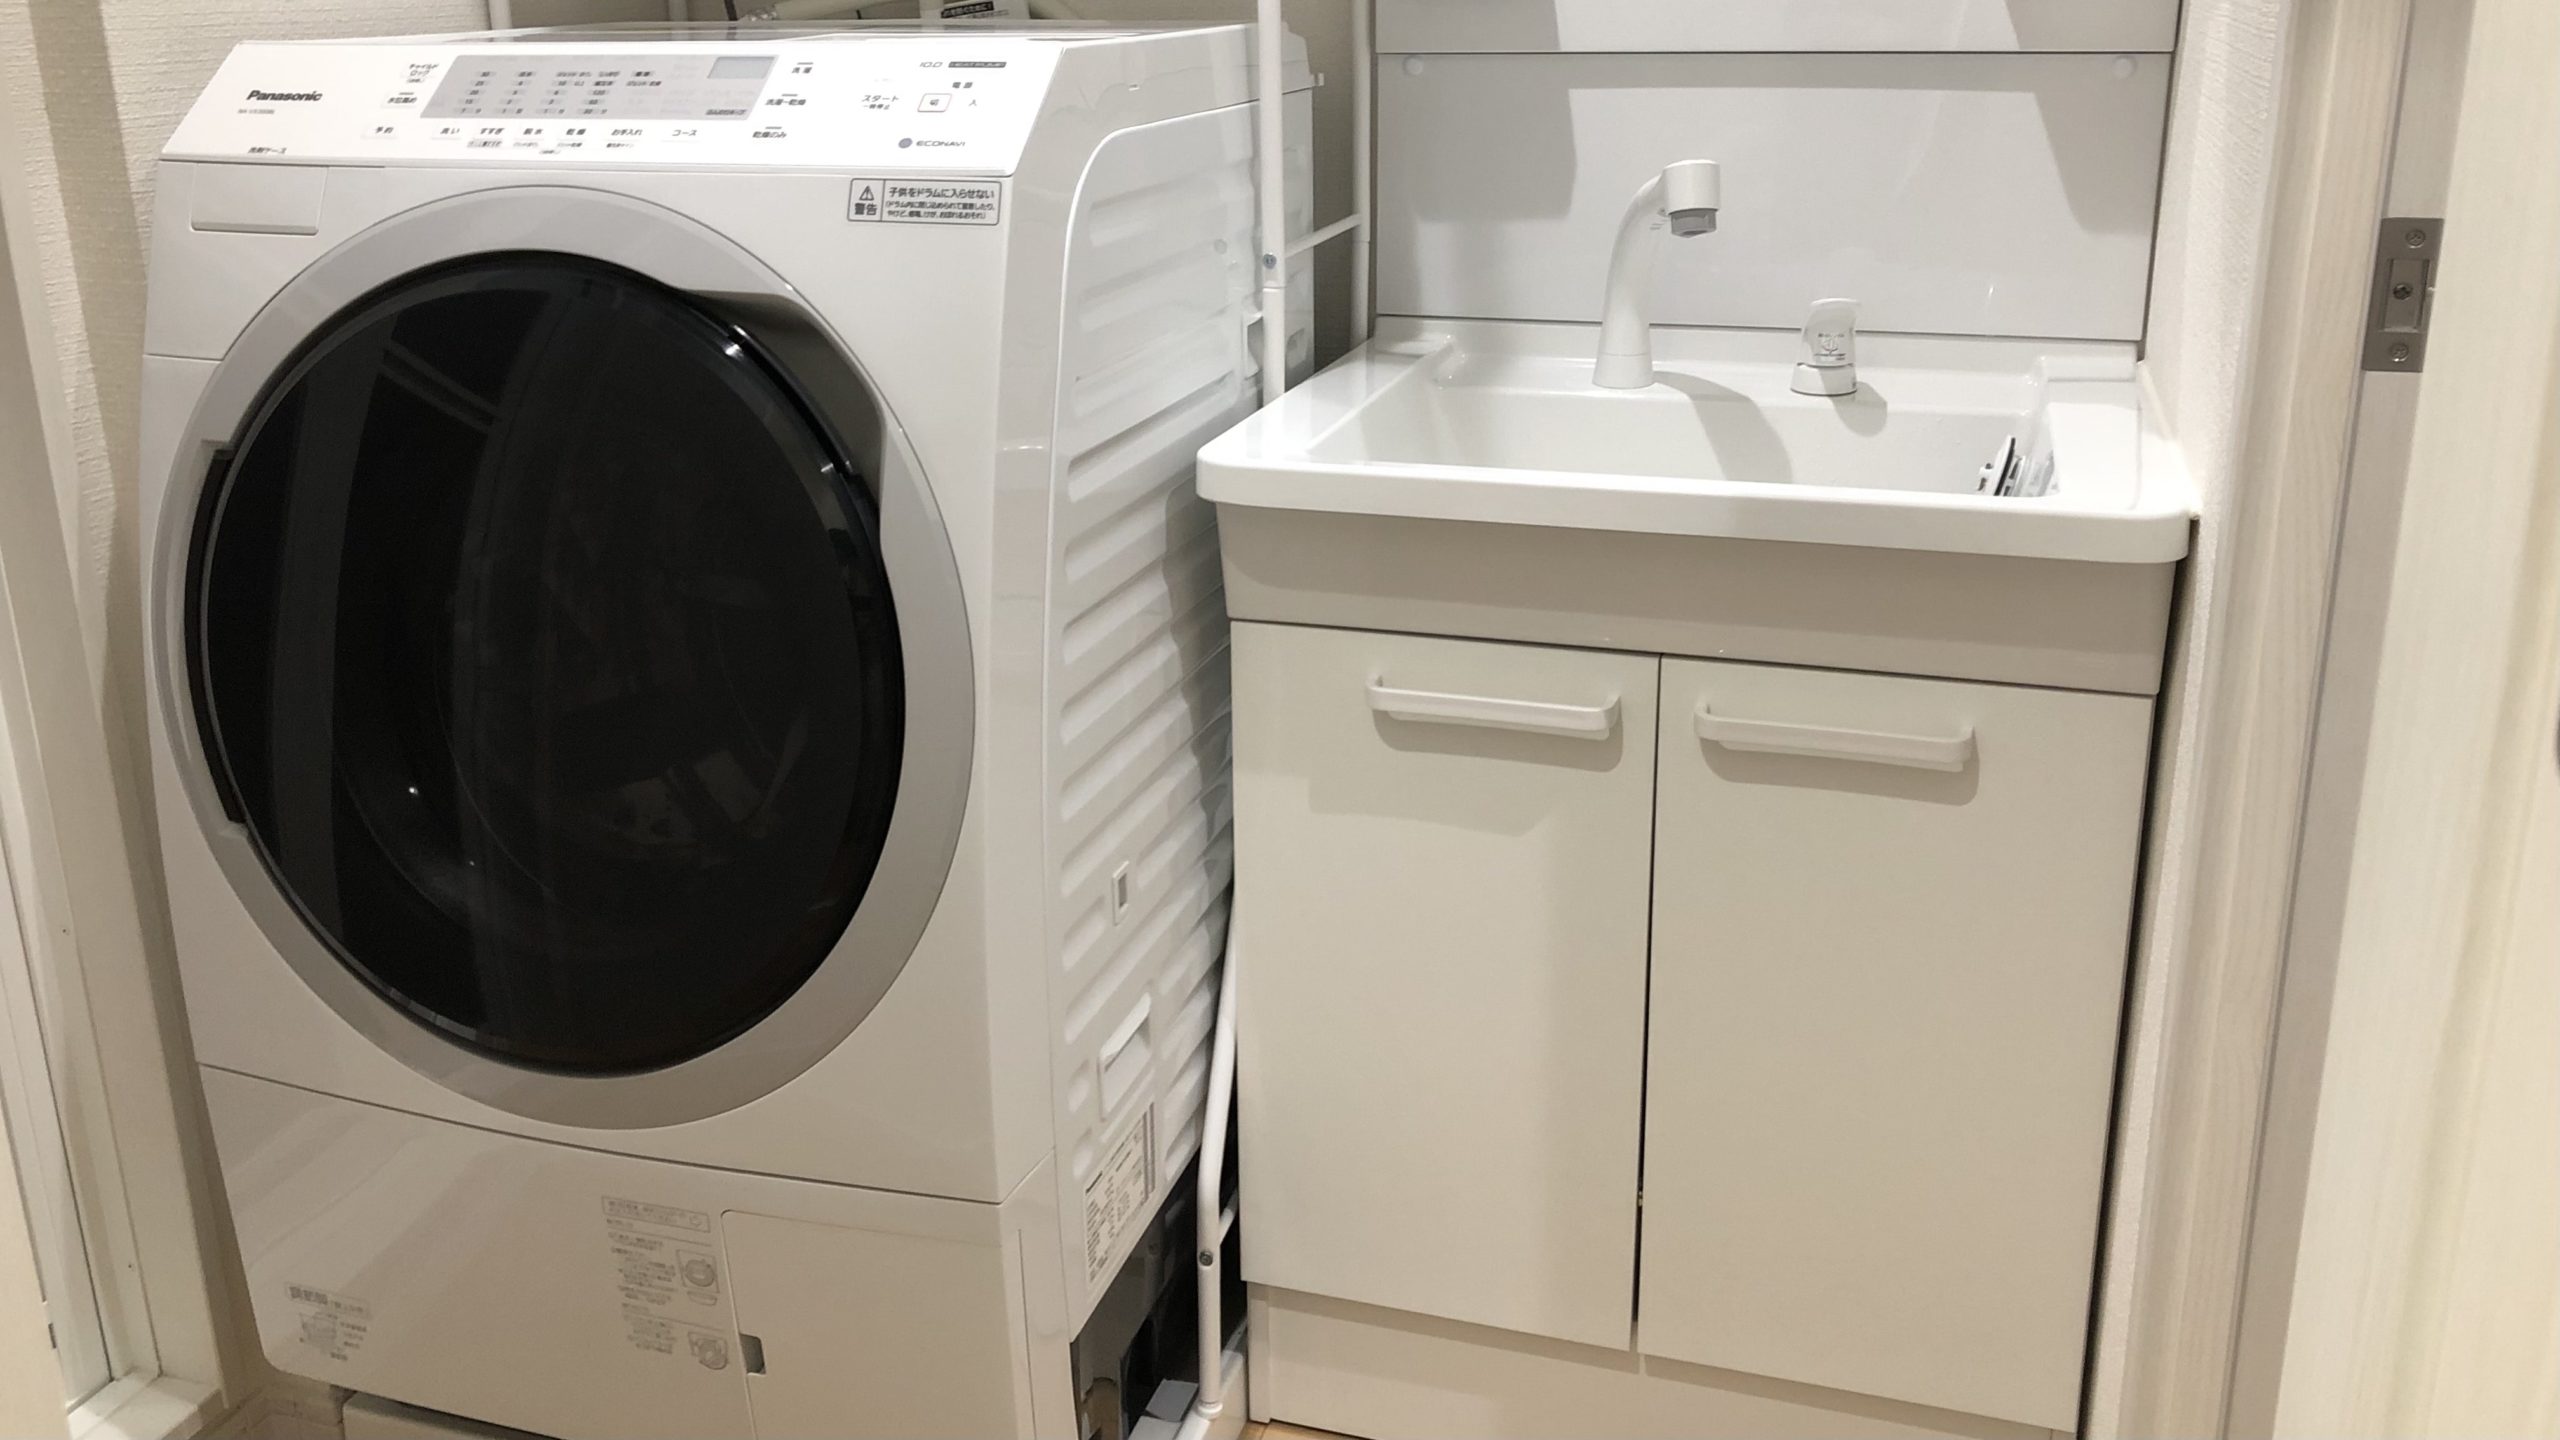 一人暮らし】設置不可と断られてもドラム式洗濯機を設置できた方法 